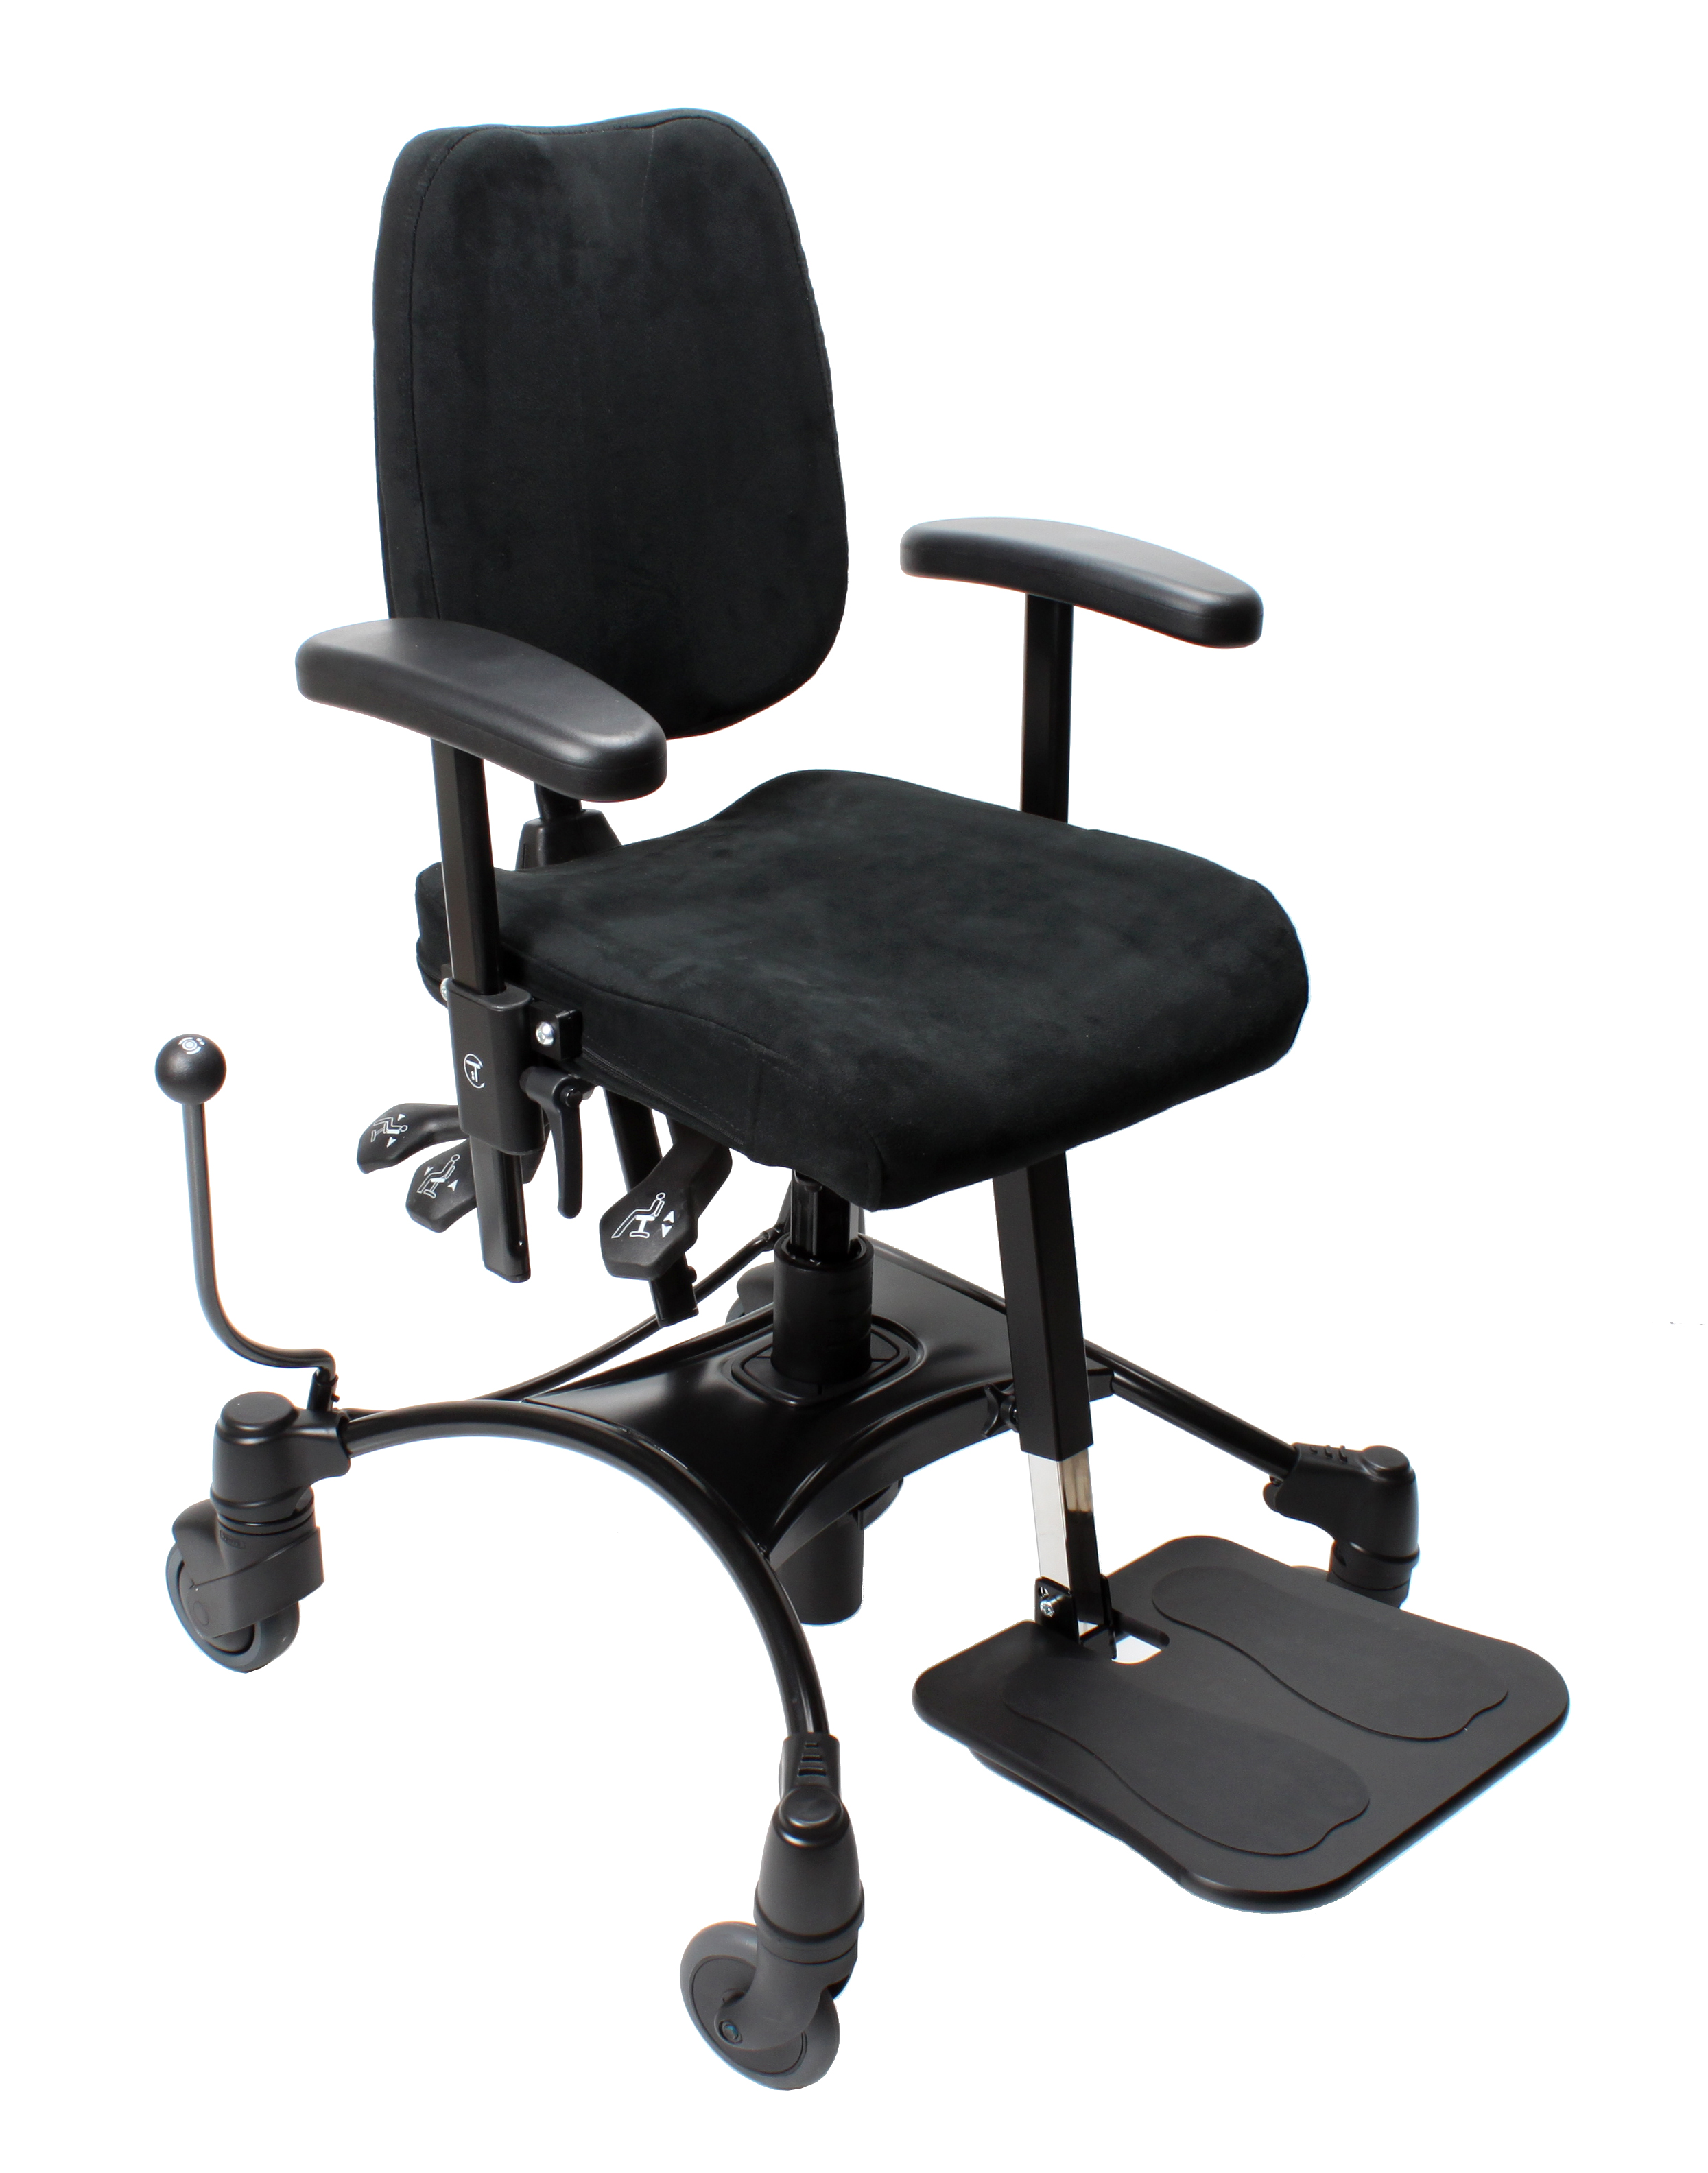 Junior trippelstoel Vela Tango 100S, 42-57 cm, rugleun, heupsteun, hoofdsteun, zwart